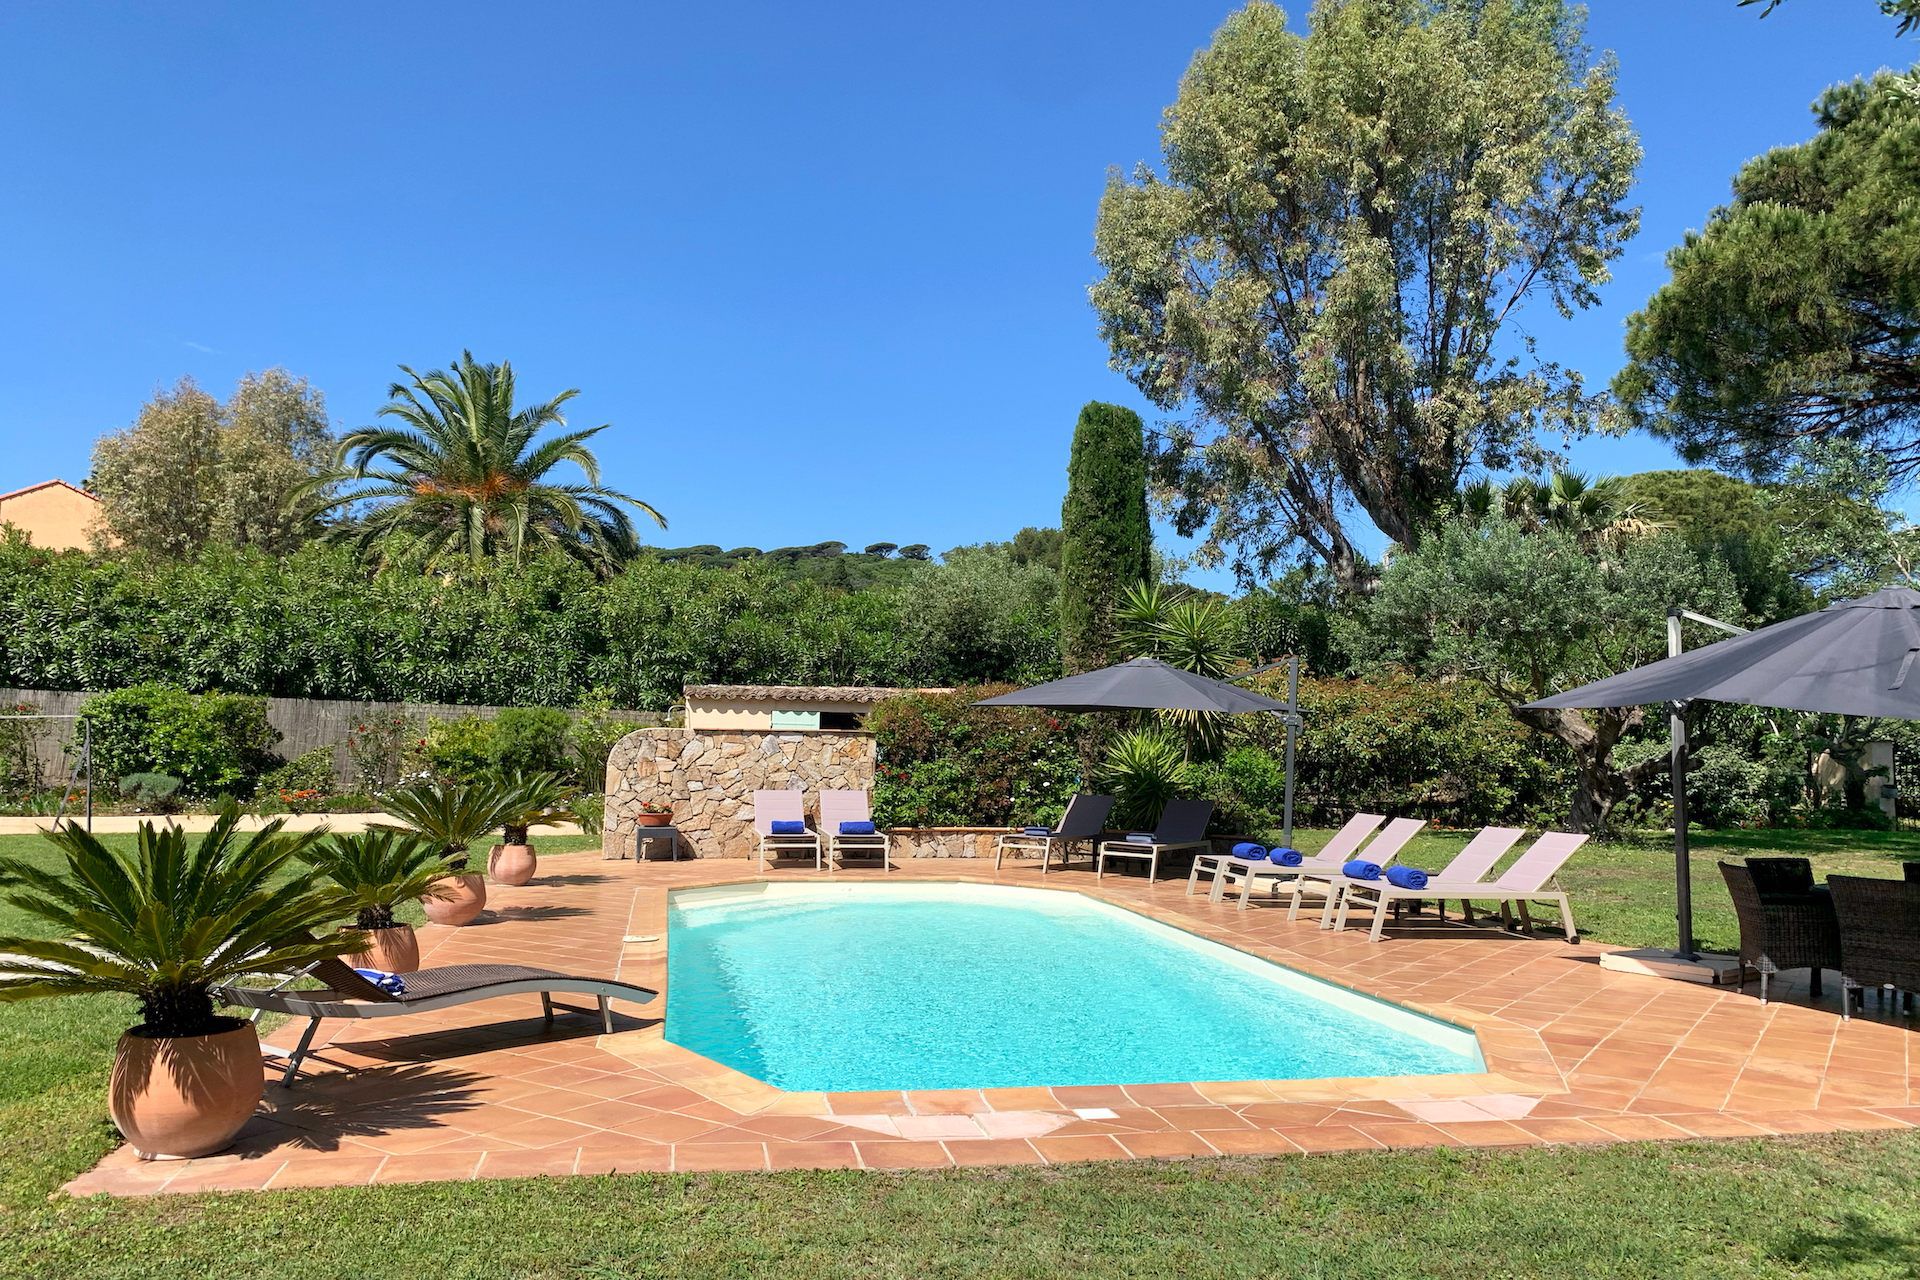 Méditerranée Location Villa with Private pool in Saint-Tropez, Côte d'Azur